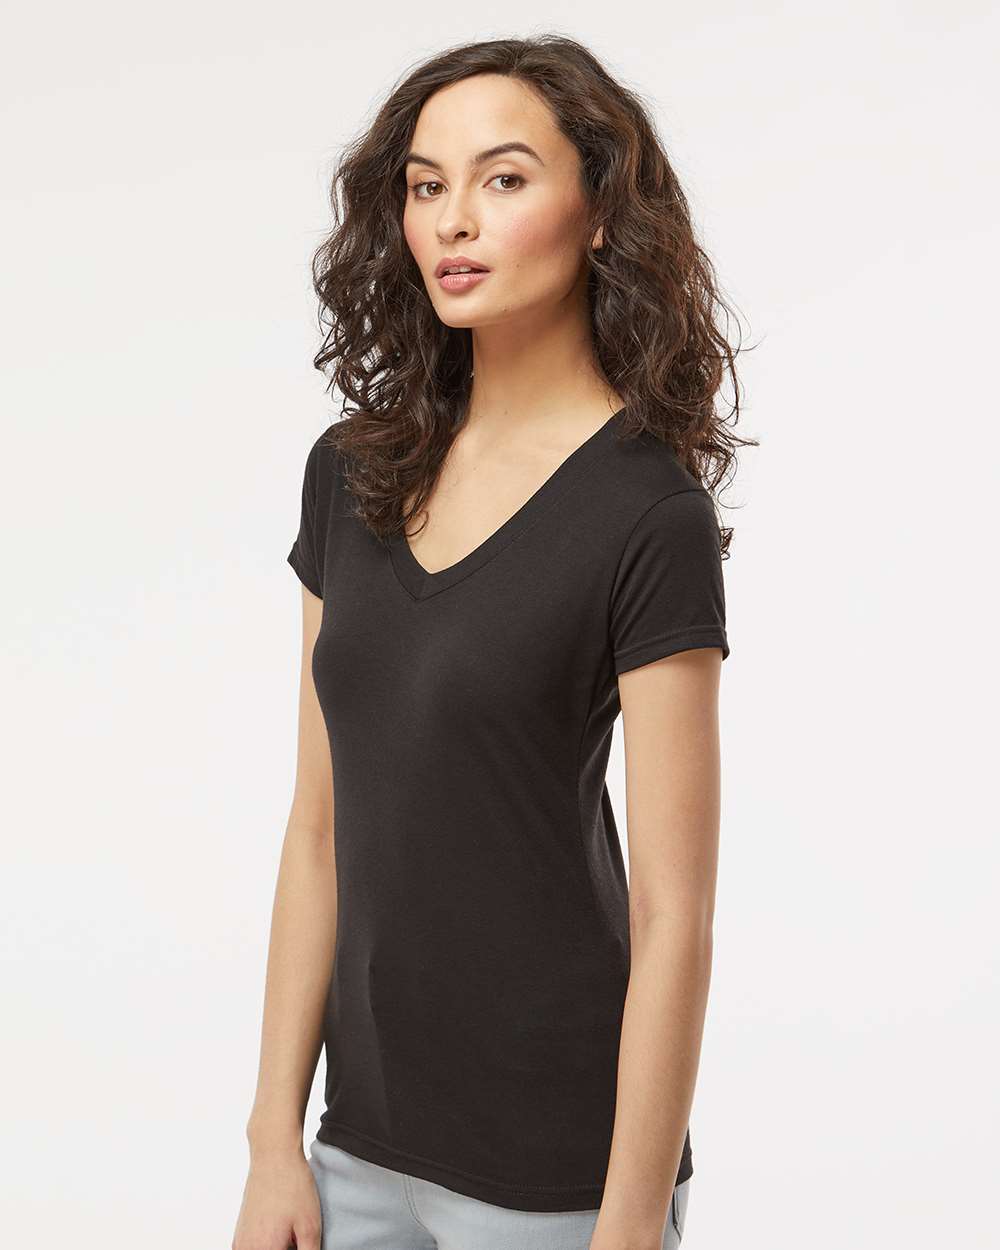 M&O 3542 - Women's Deluxe Blend V-Neck T-Shirt